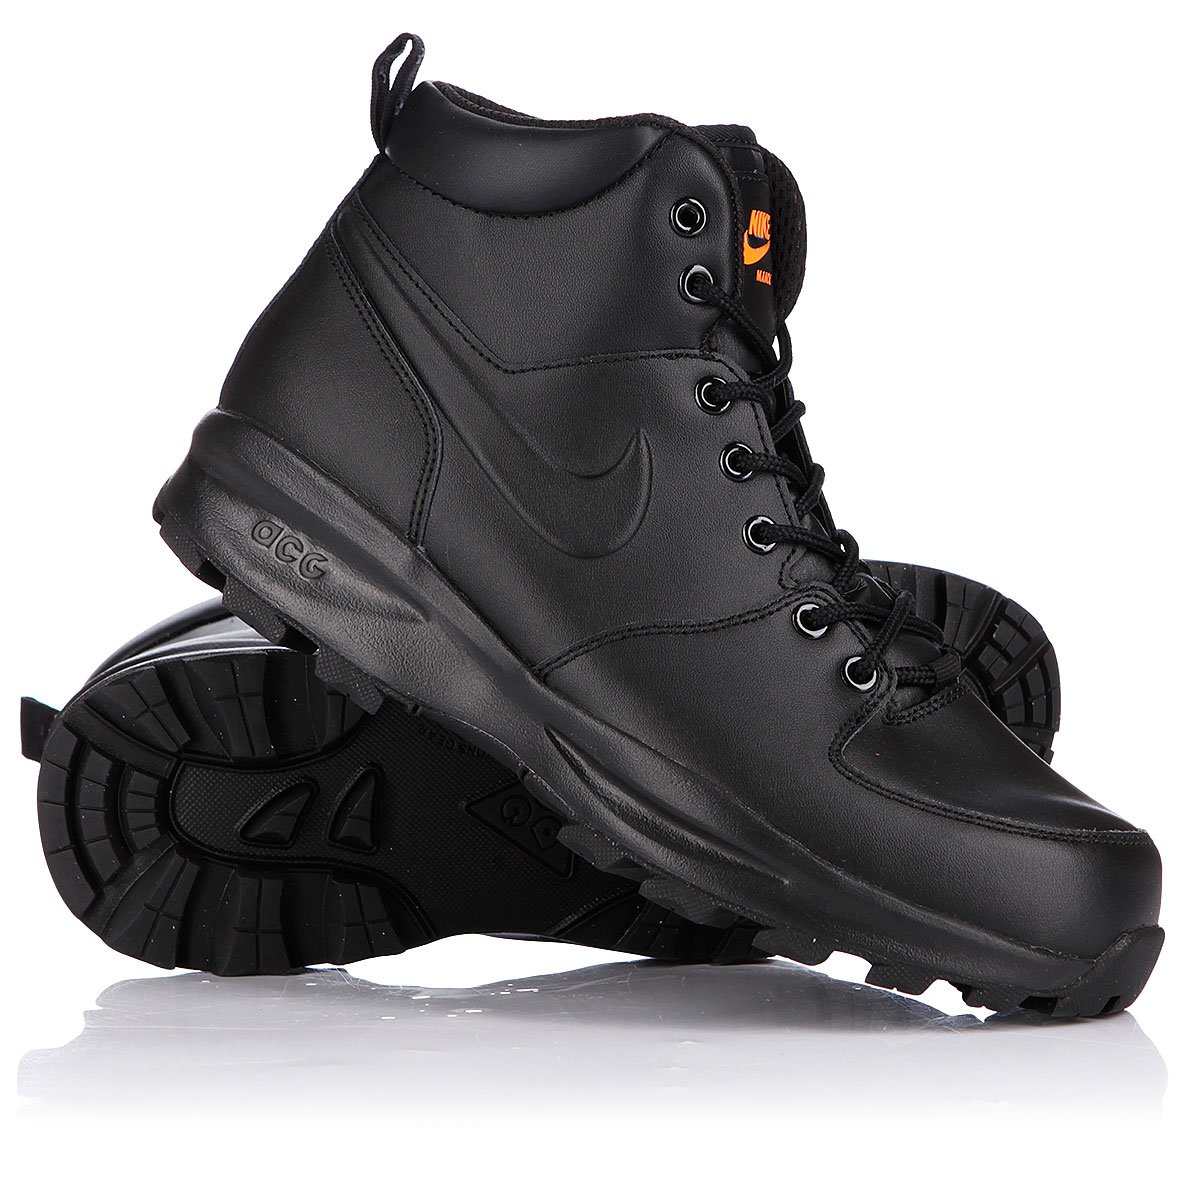 Купить ботинки зимние Nike ACG Manoa Leather Black/Total Orange в Proskater.ru